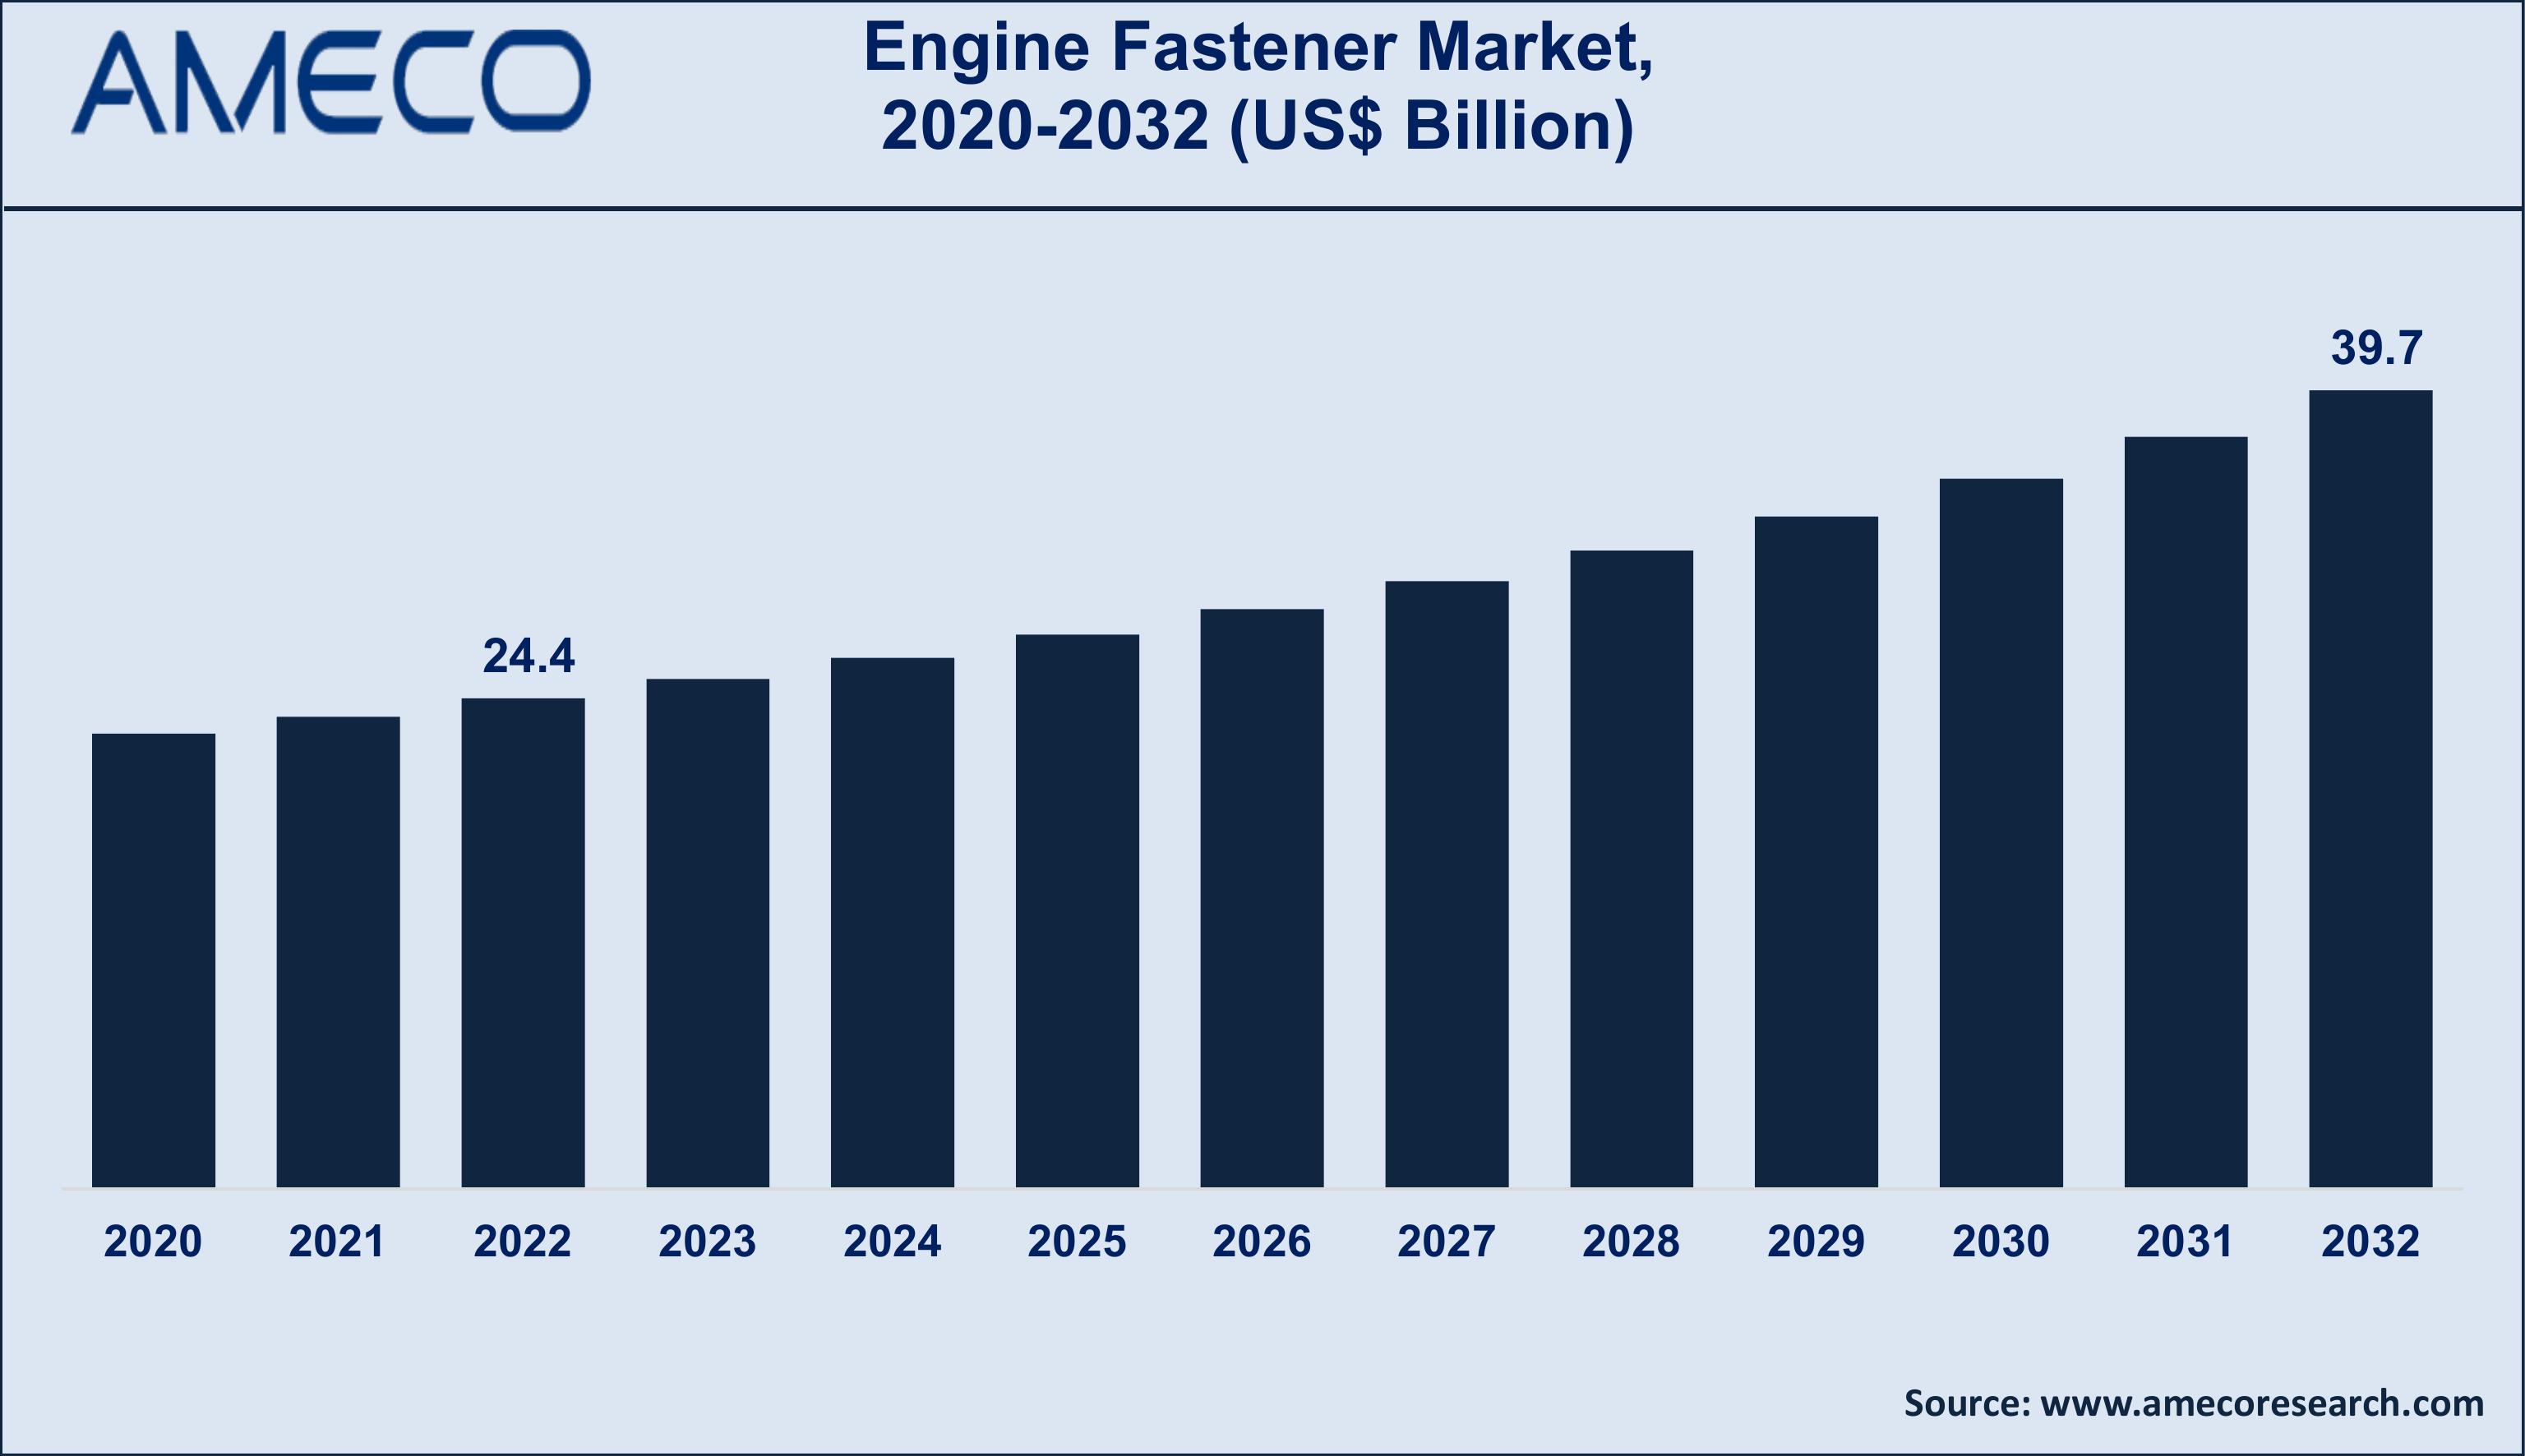 Engine Fastener Market Trends